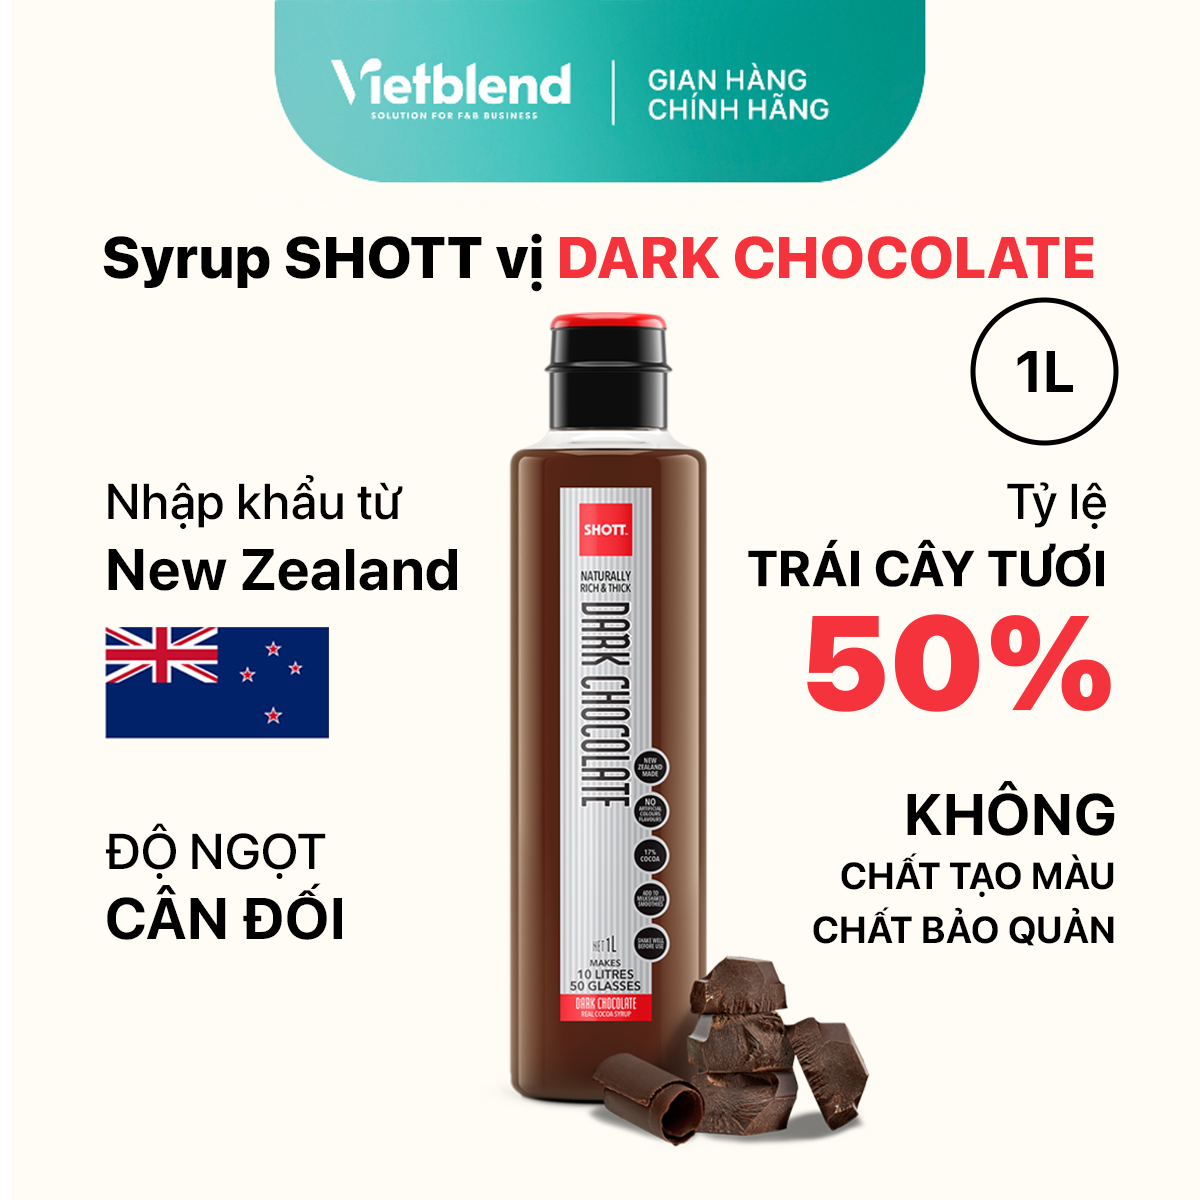 SHOTT Syrup - Dark Chocolate Flavor - 1L Bottle